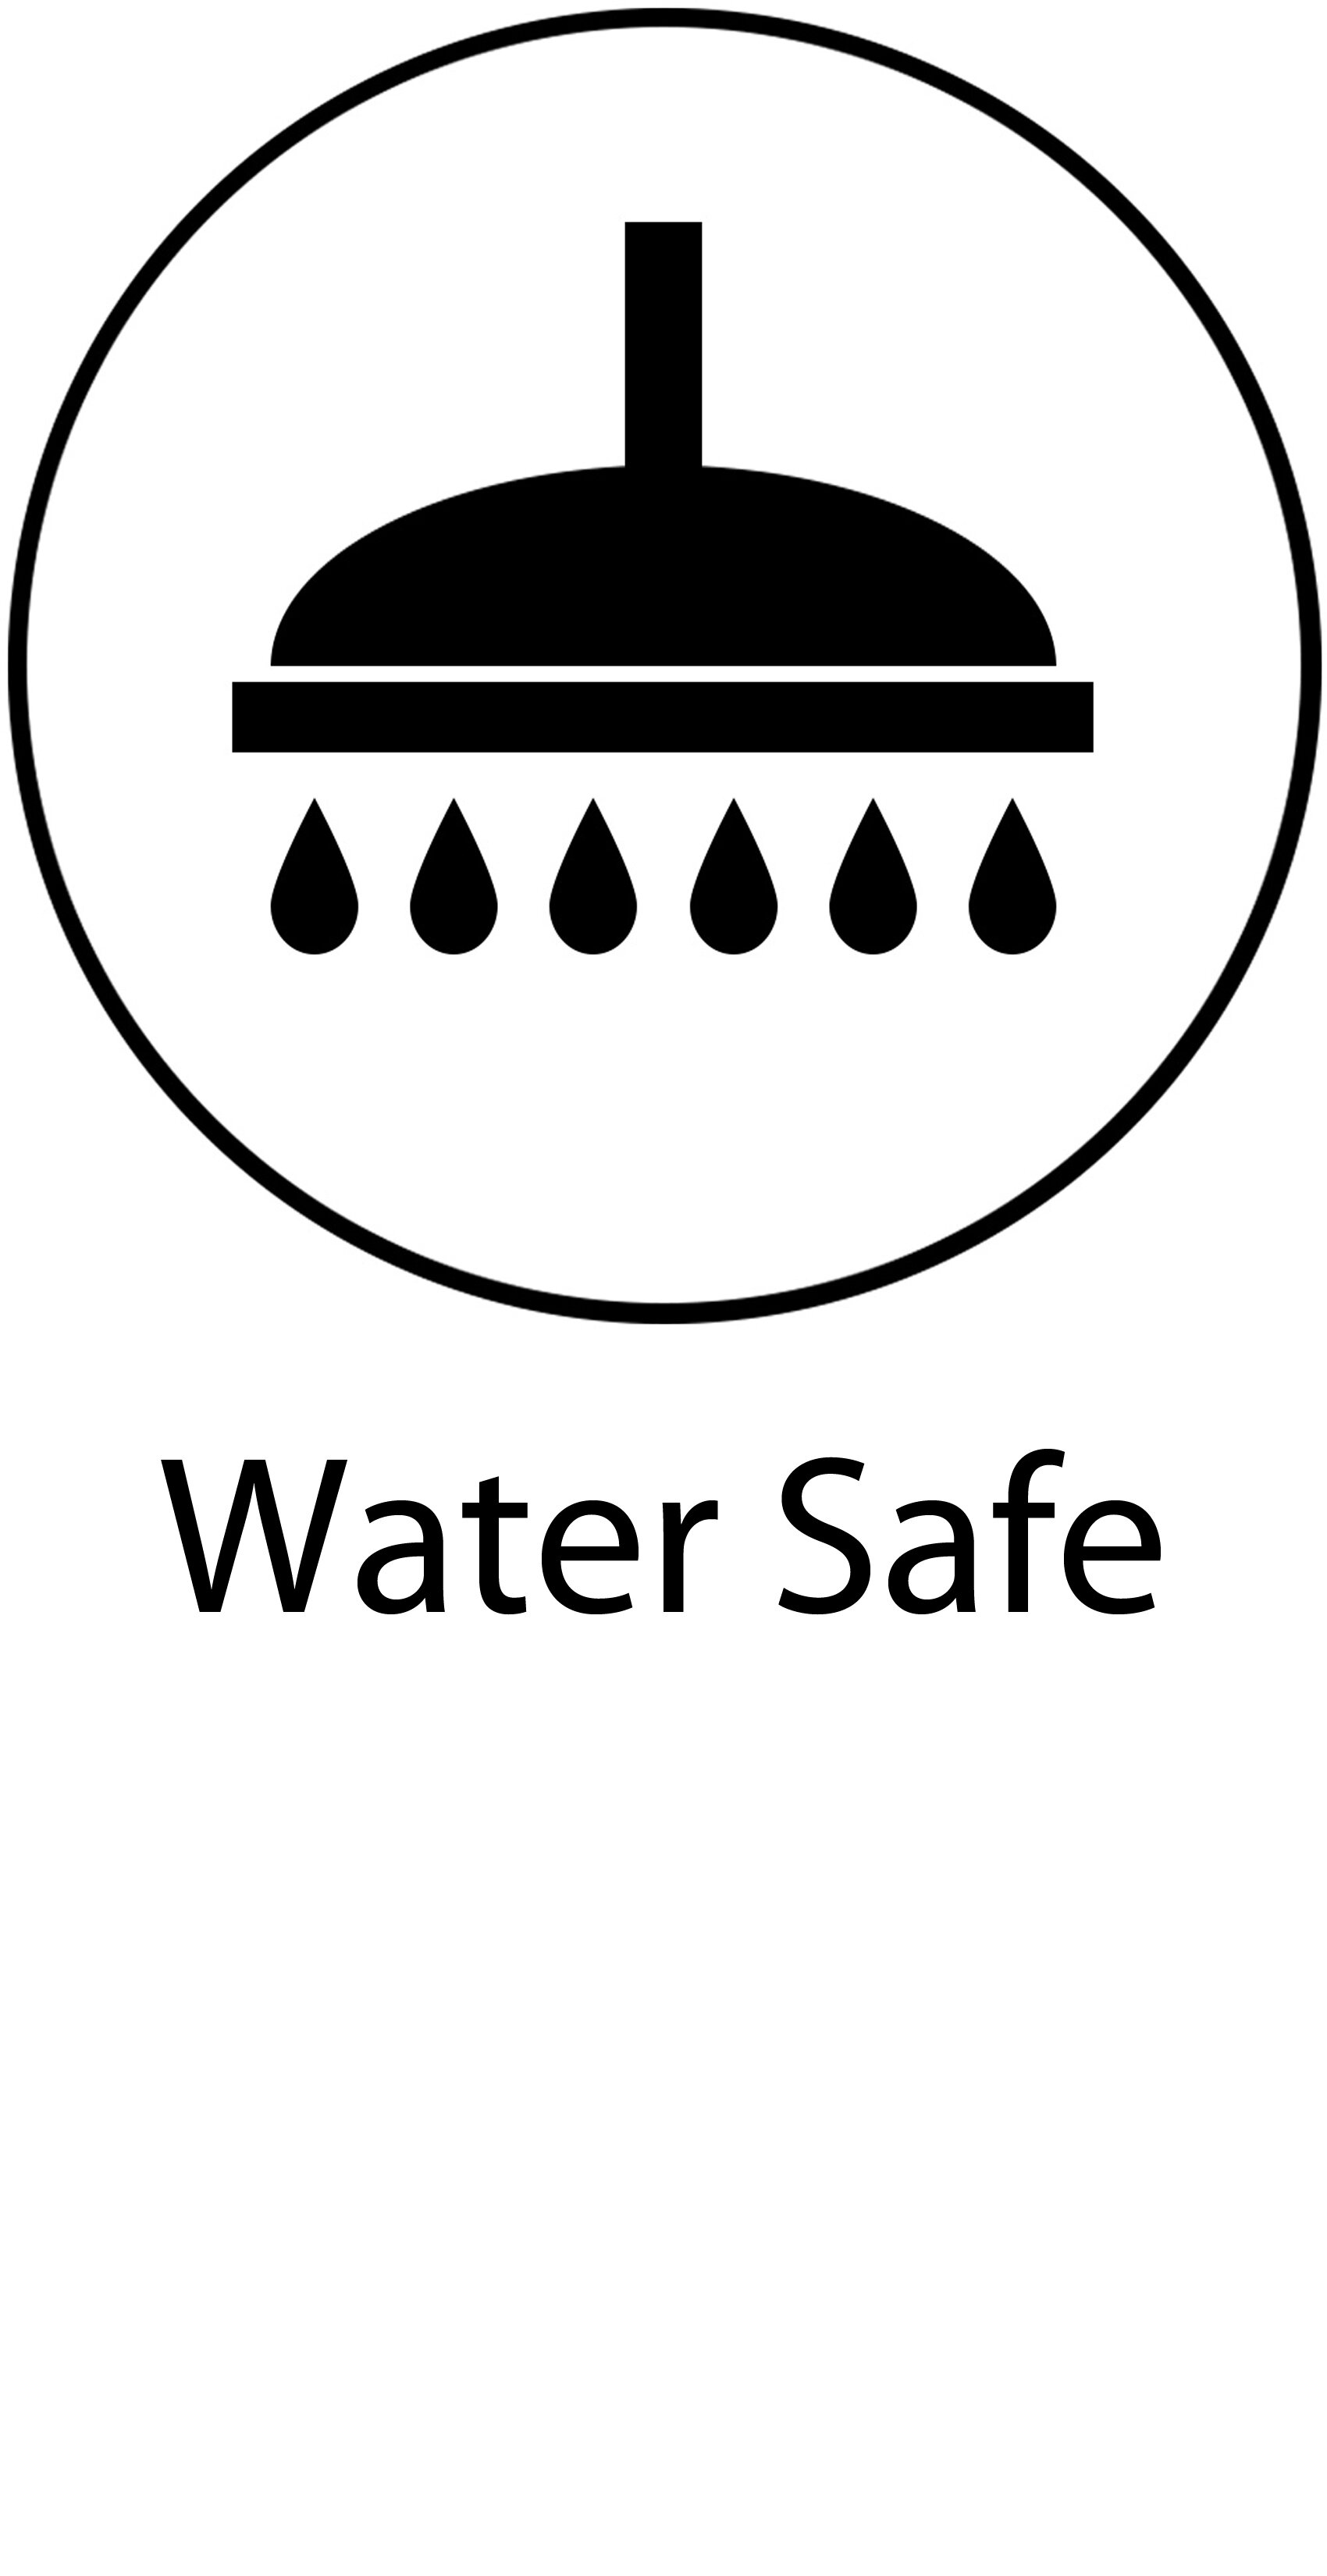 06 Water Safe.jpg